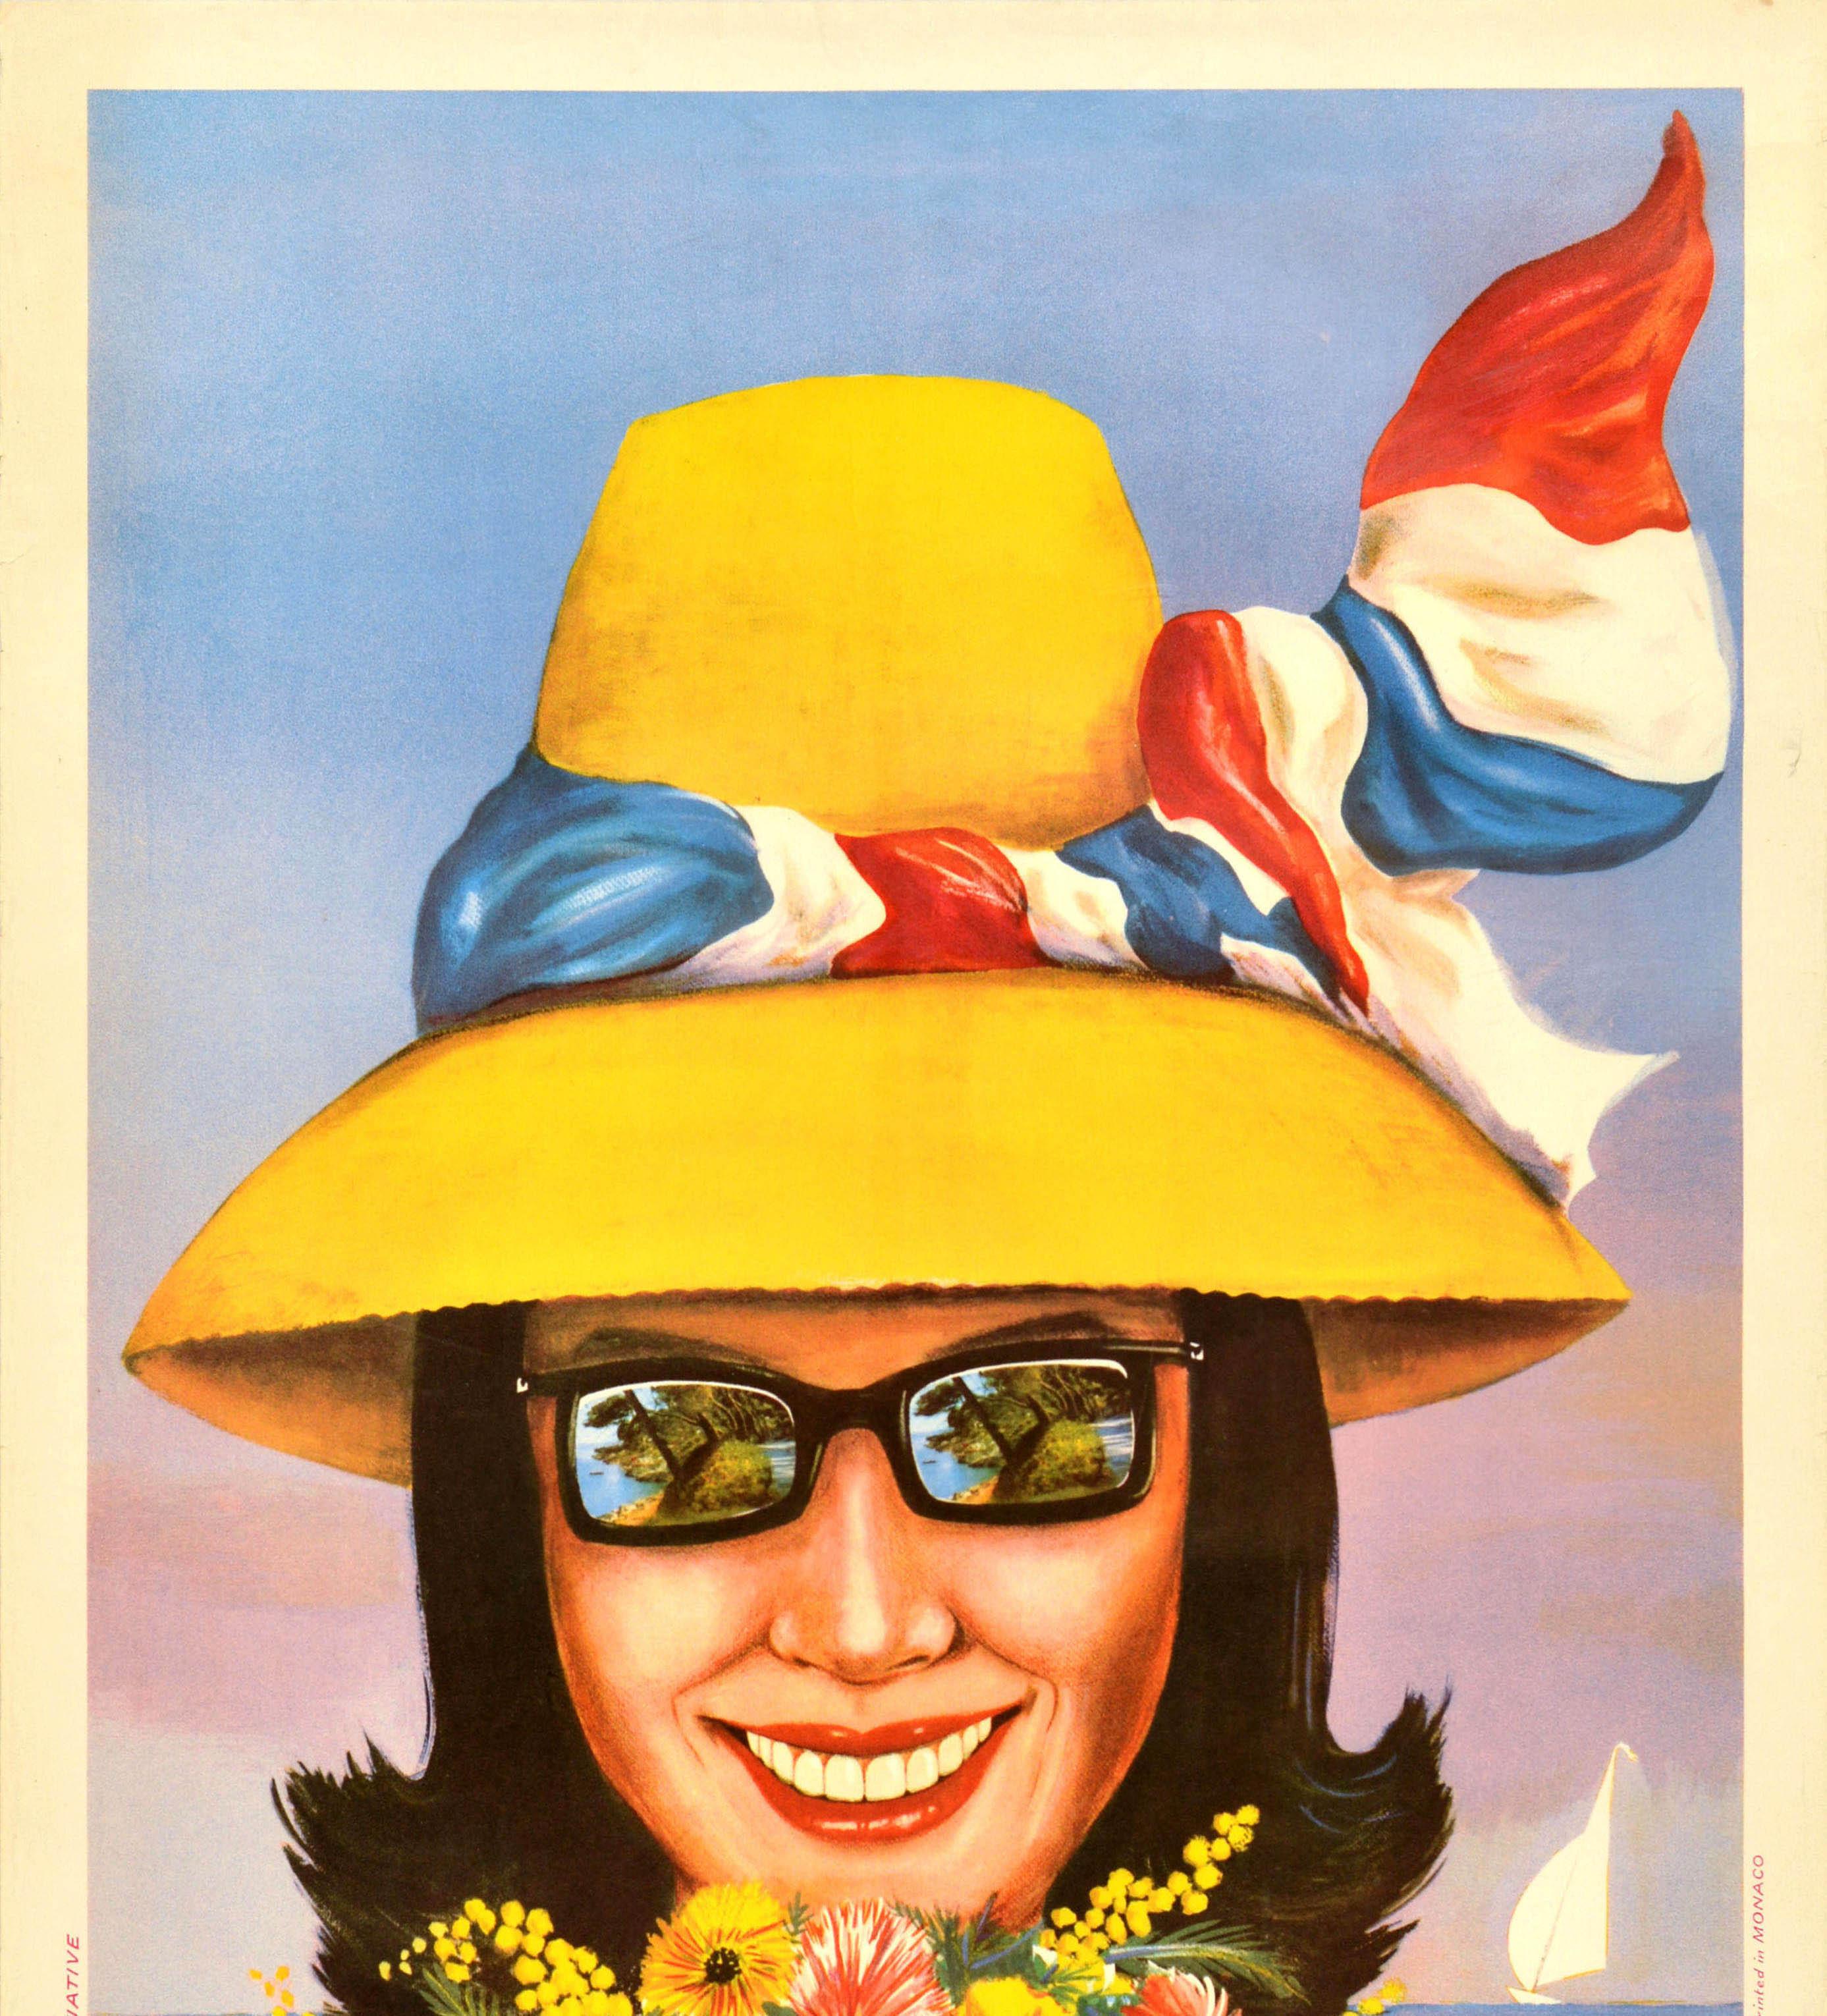 Monacan Original Vintage Travel Poster Roquebrune Cap Martin Riviera Cote d'Azur France For Sale